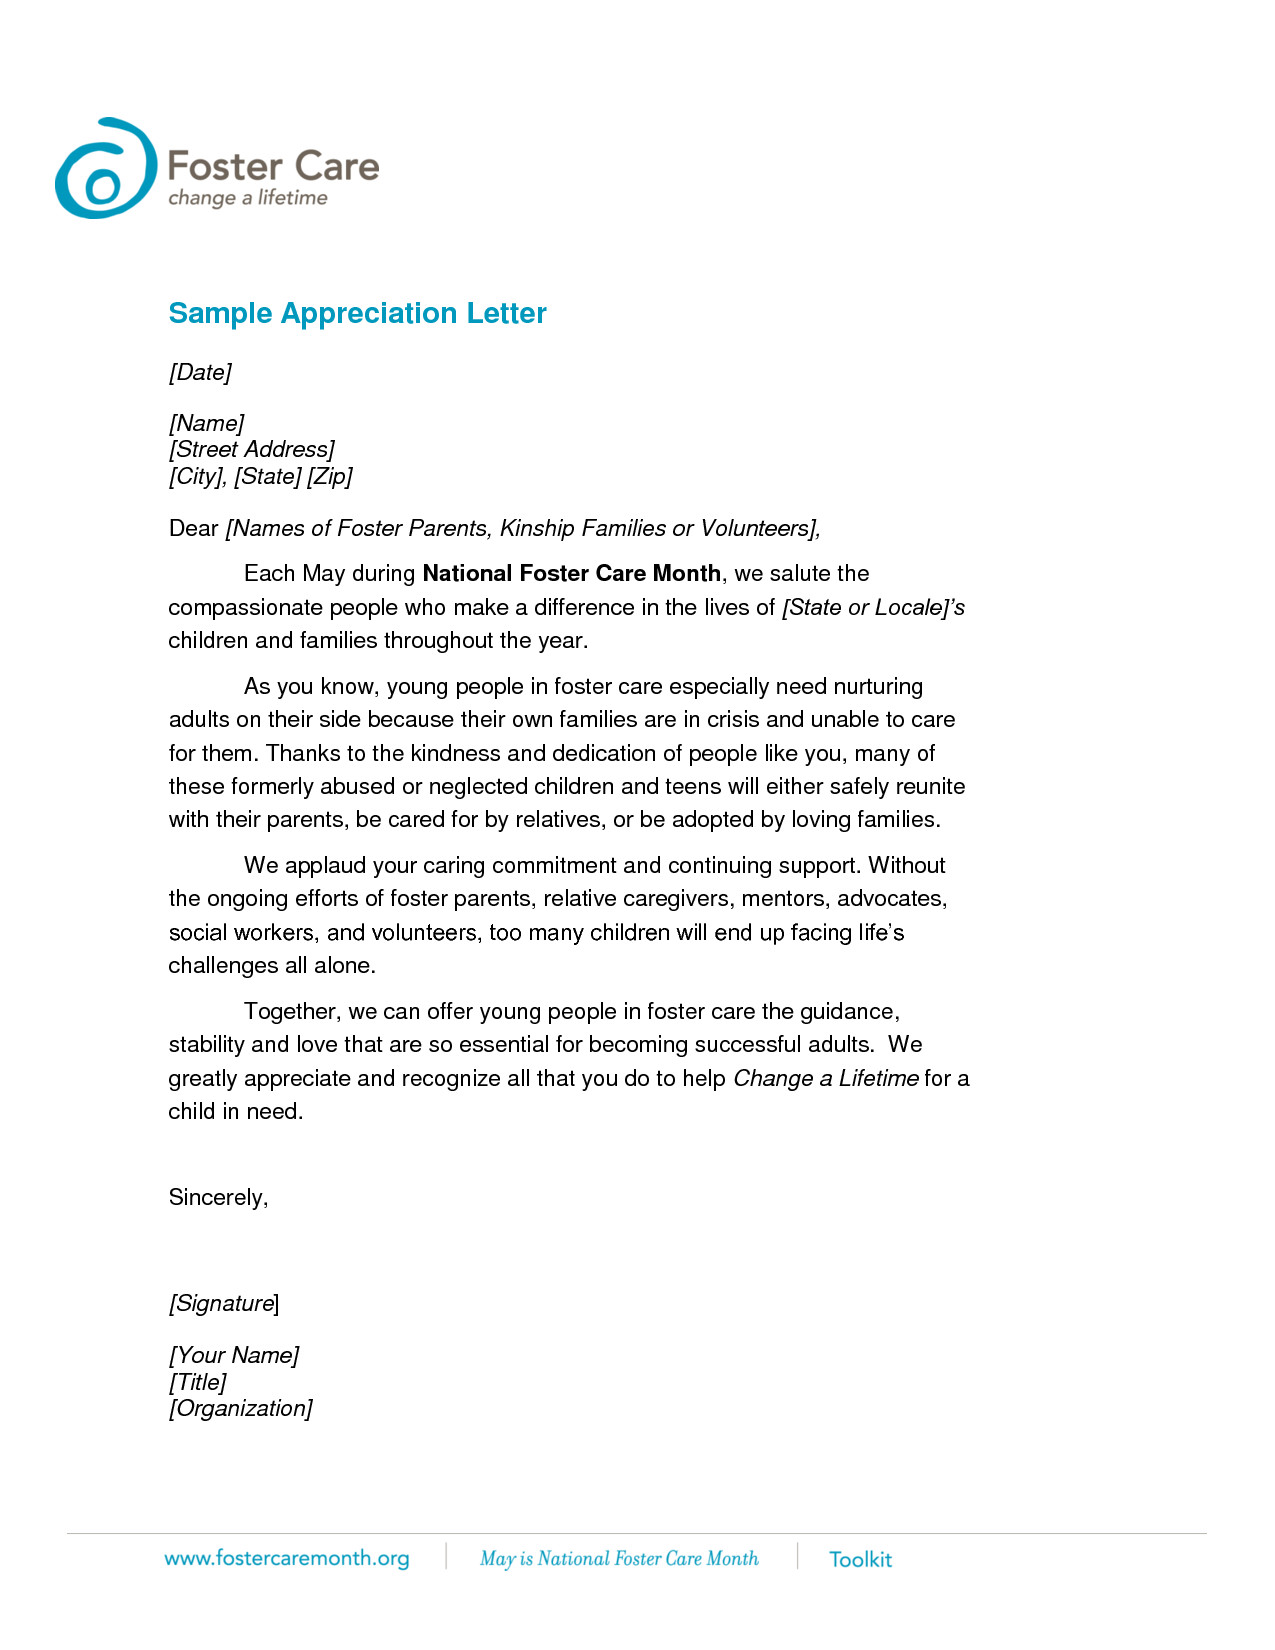 Volunteer appreciation letter sample